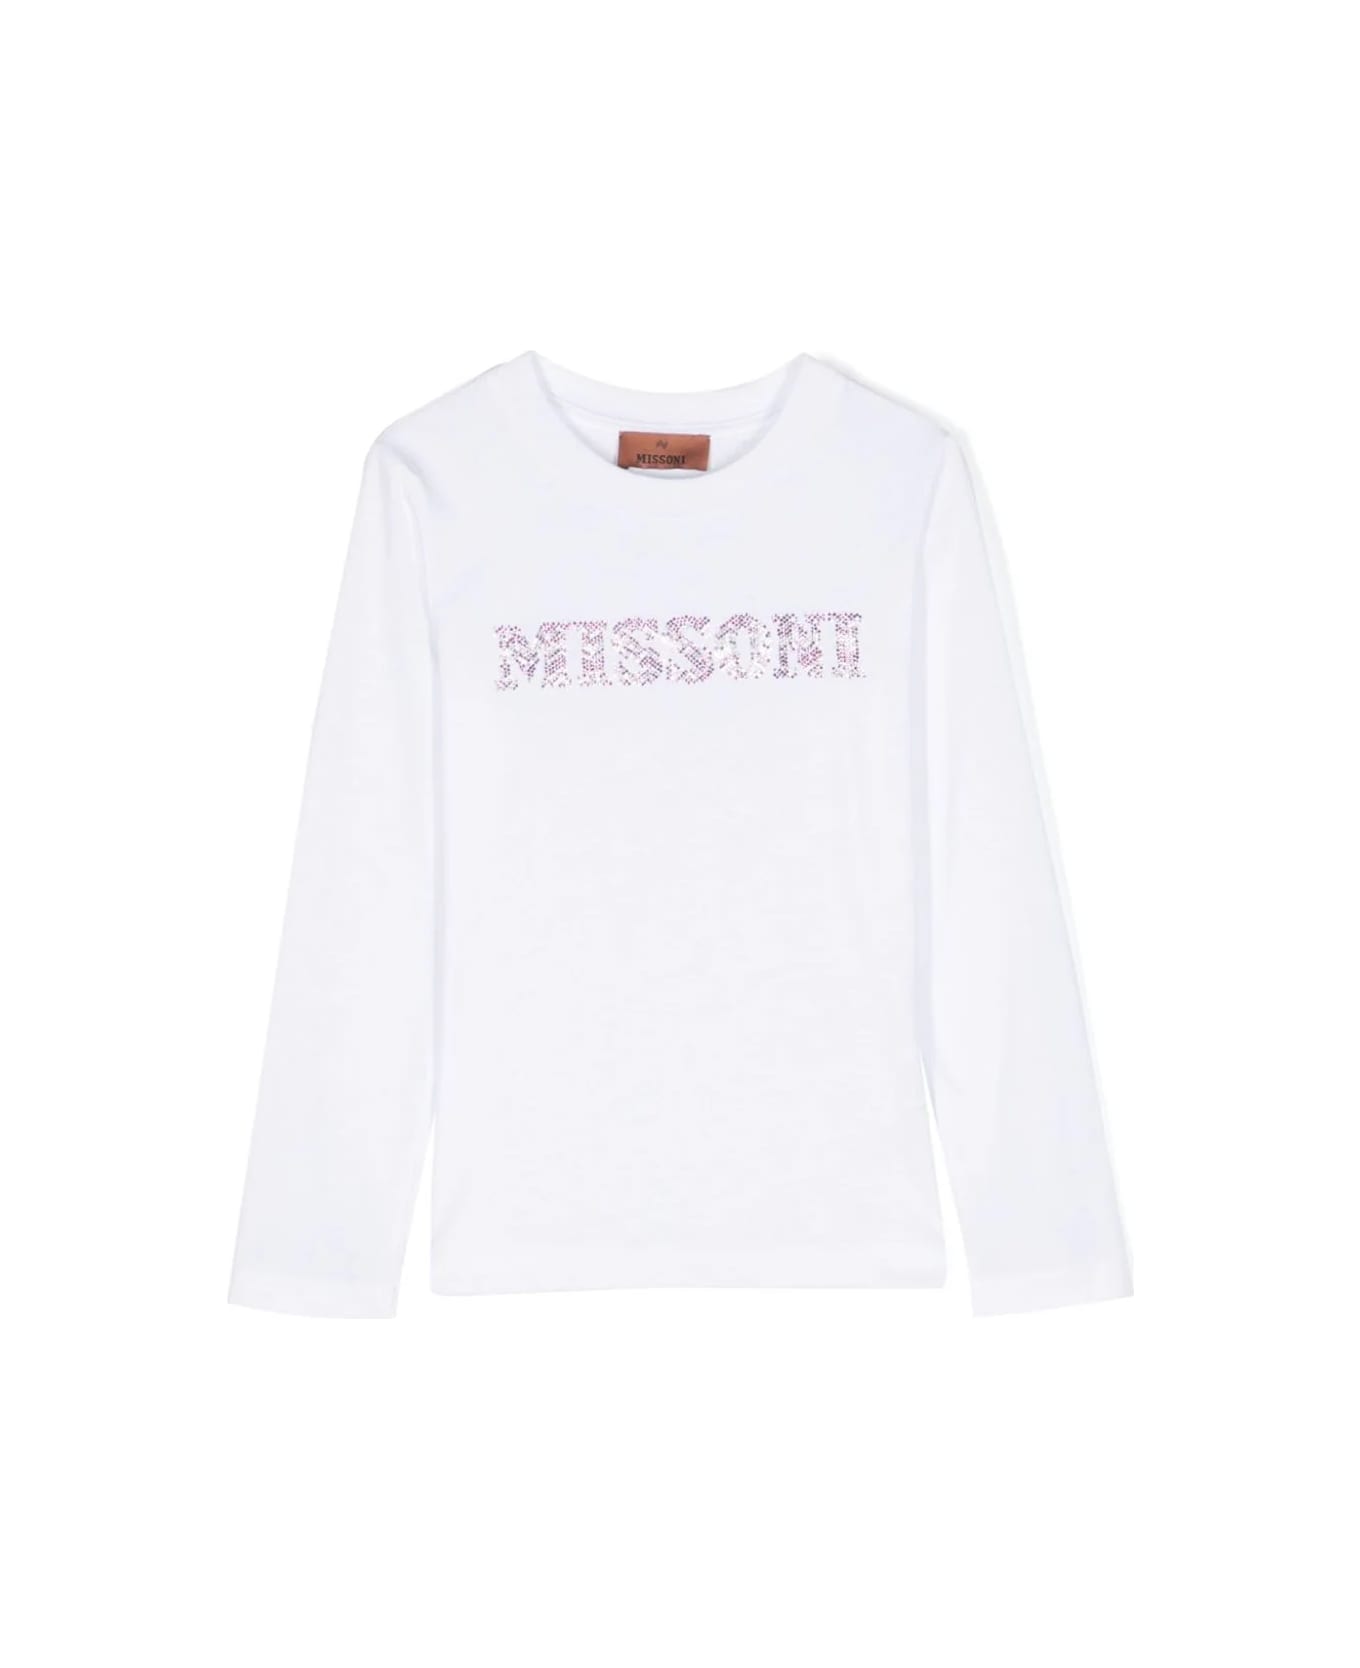 Missoni Kids T-shirt With Rhinestones - White